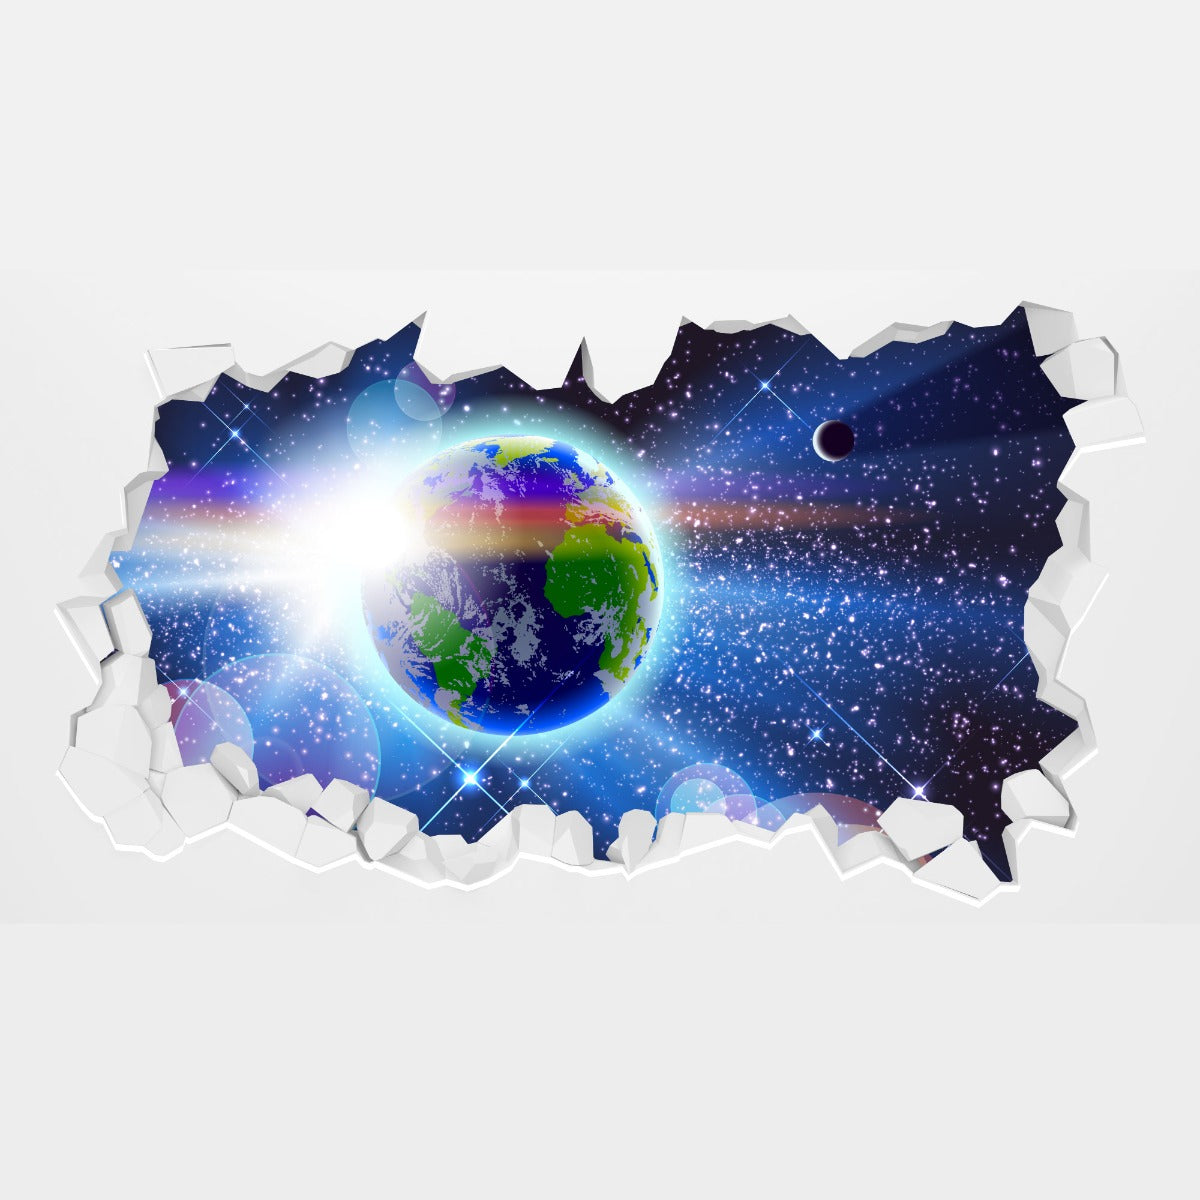 Space Wall Sticker - Earth in Space Broken Wall